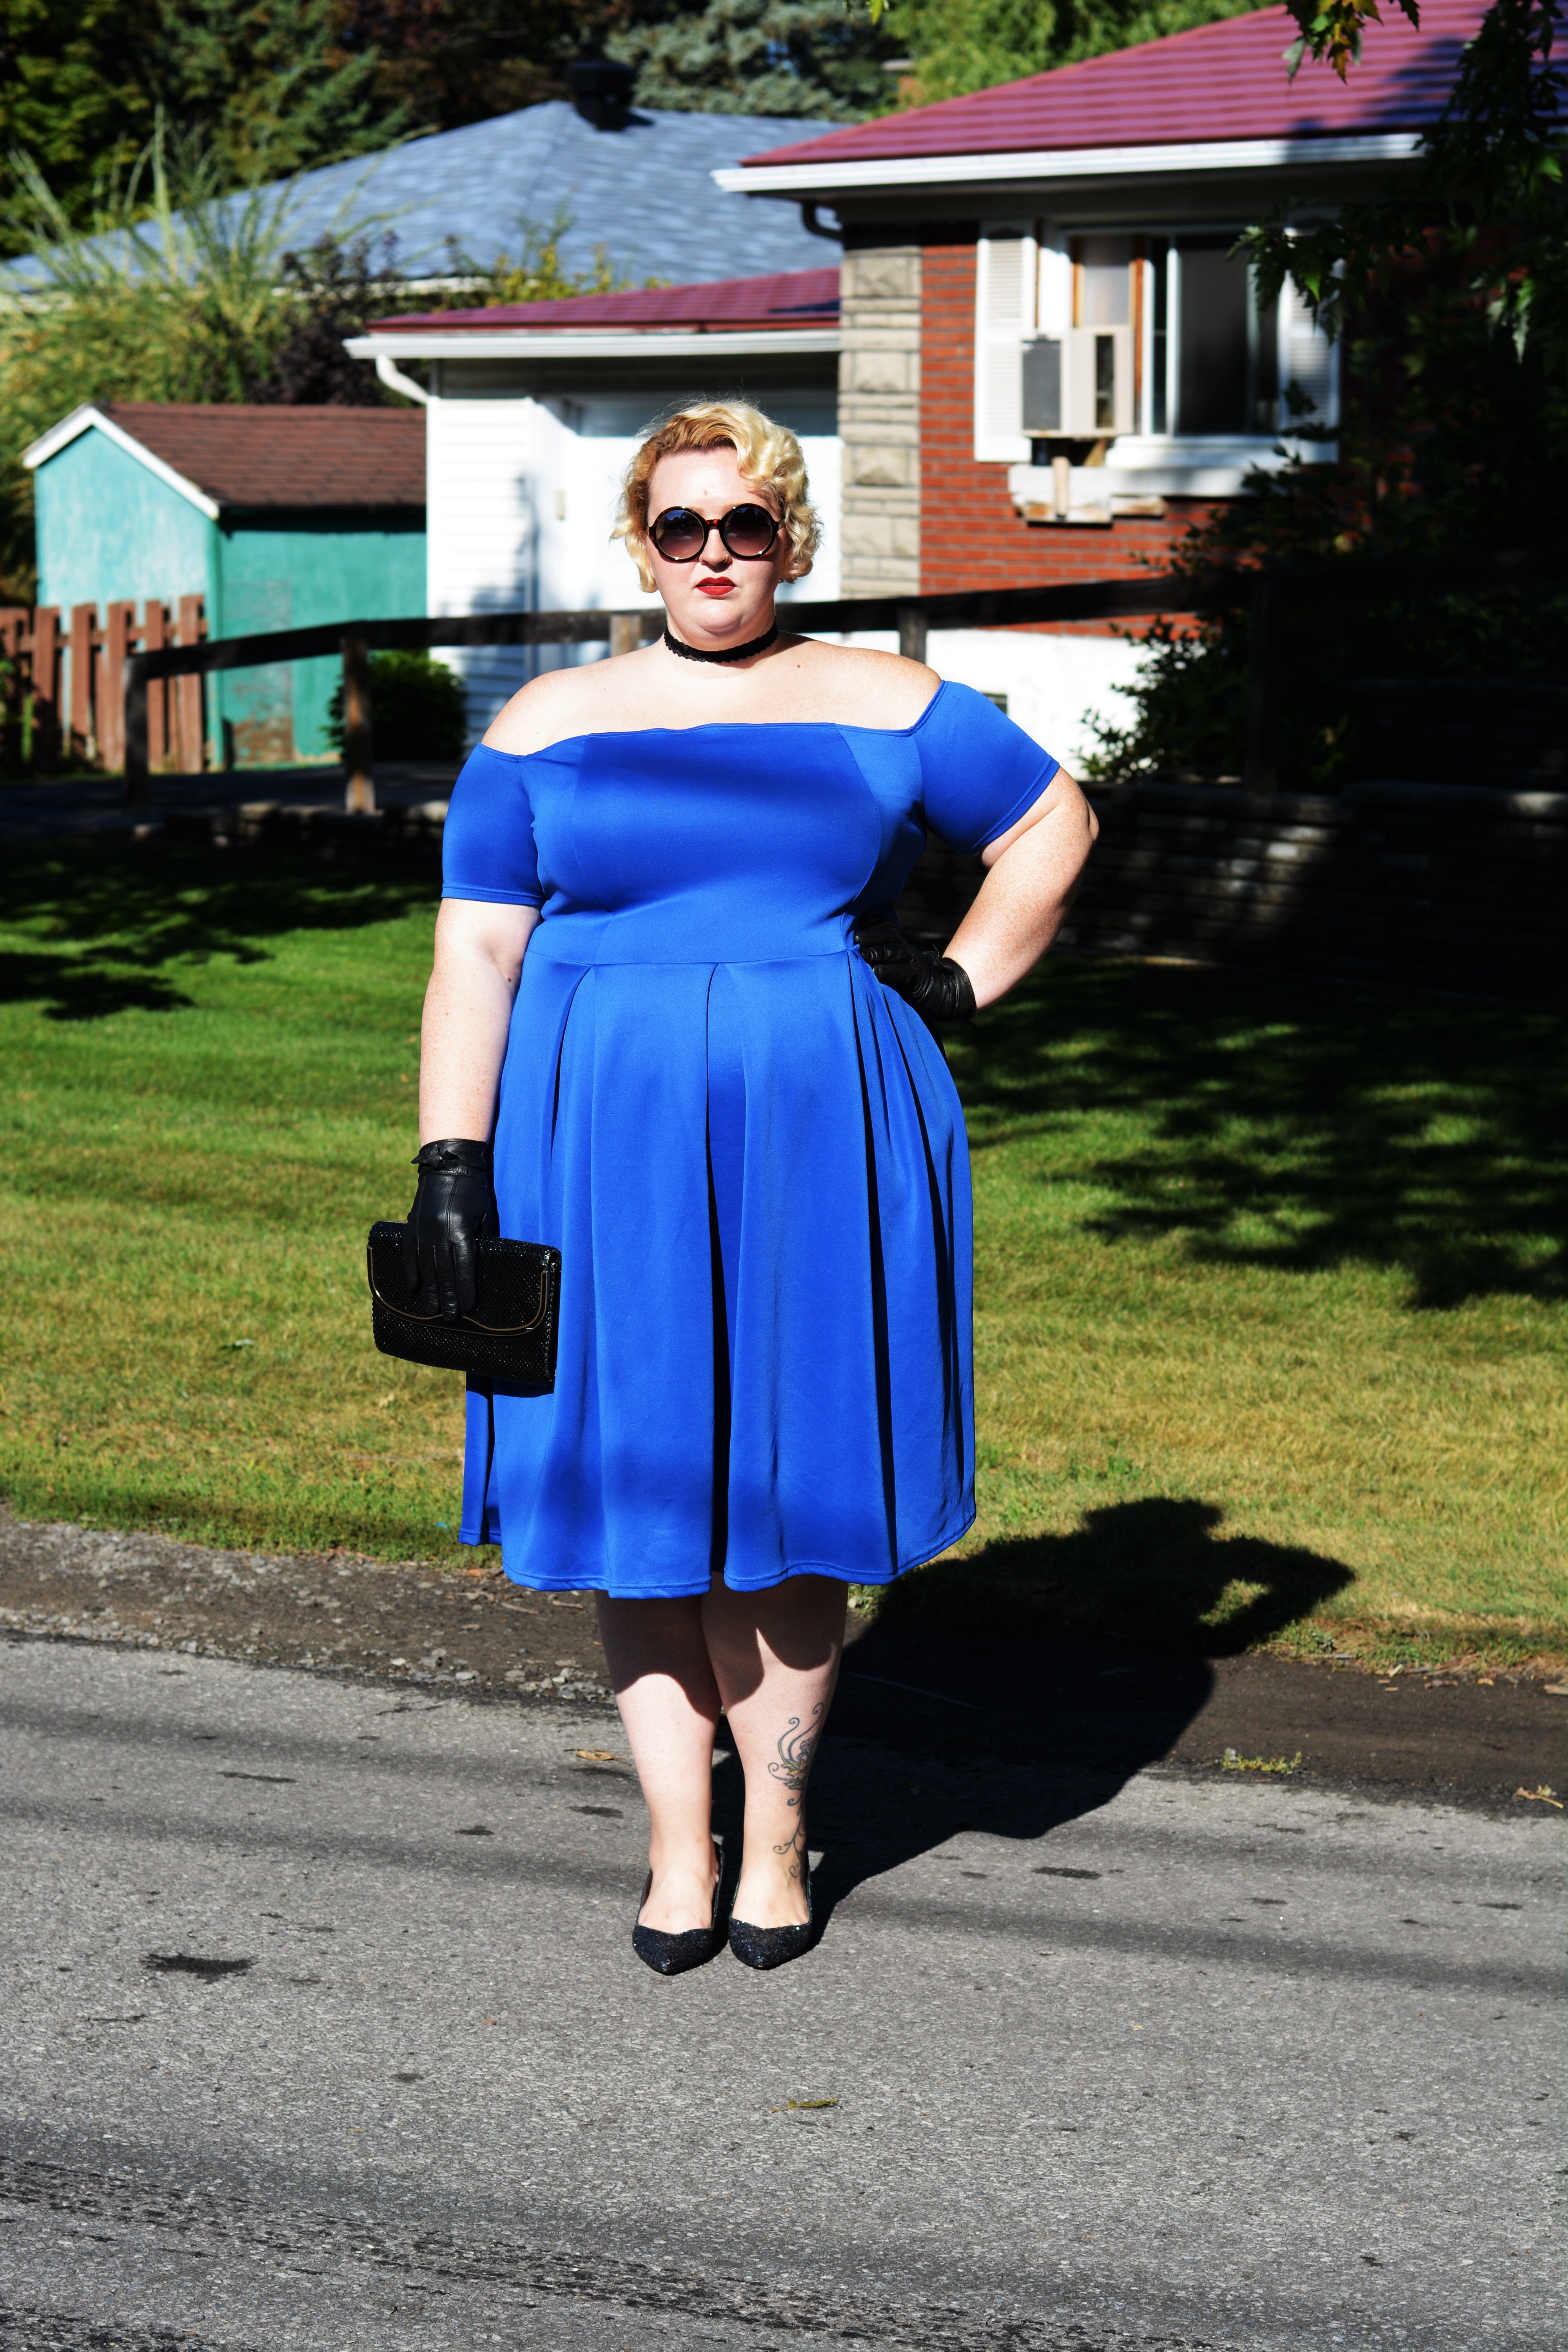 BBW in Blue Dress